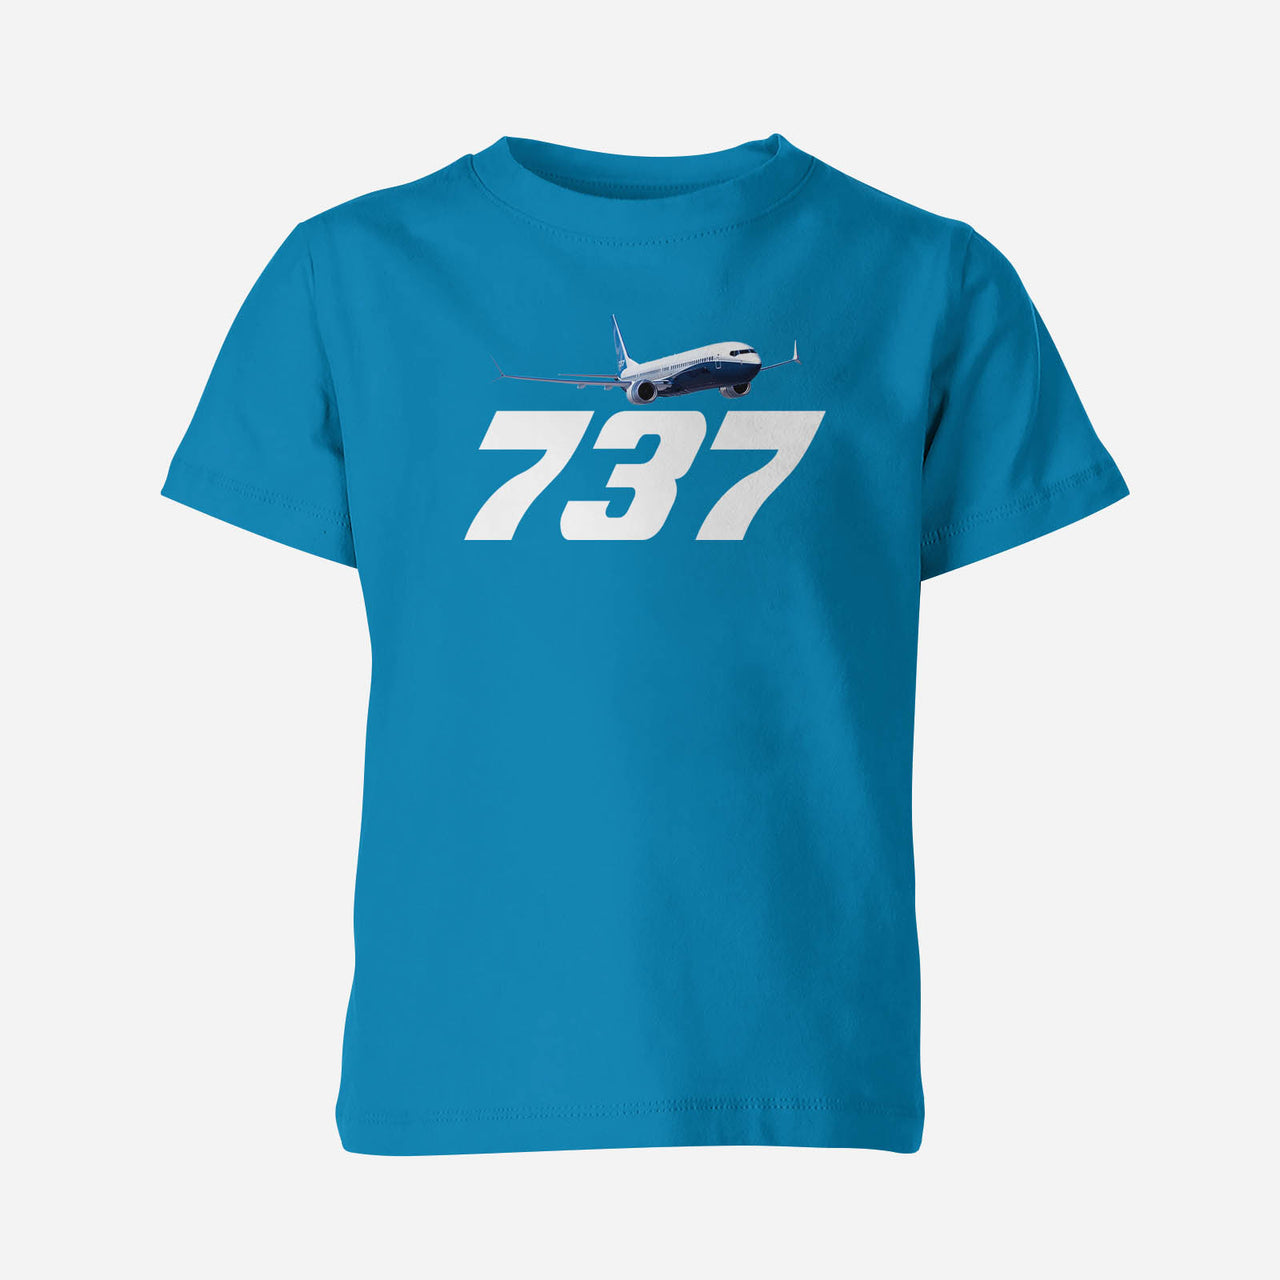 Super Boeing 737-800 Designed Children T-Shirts